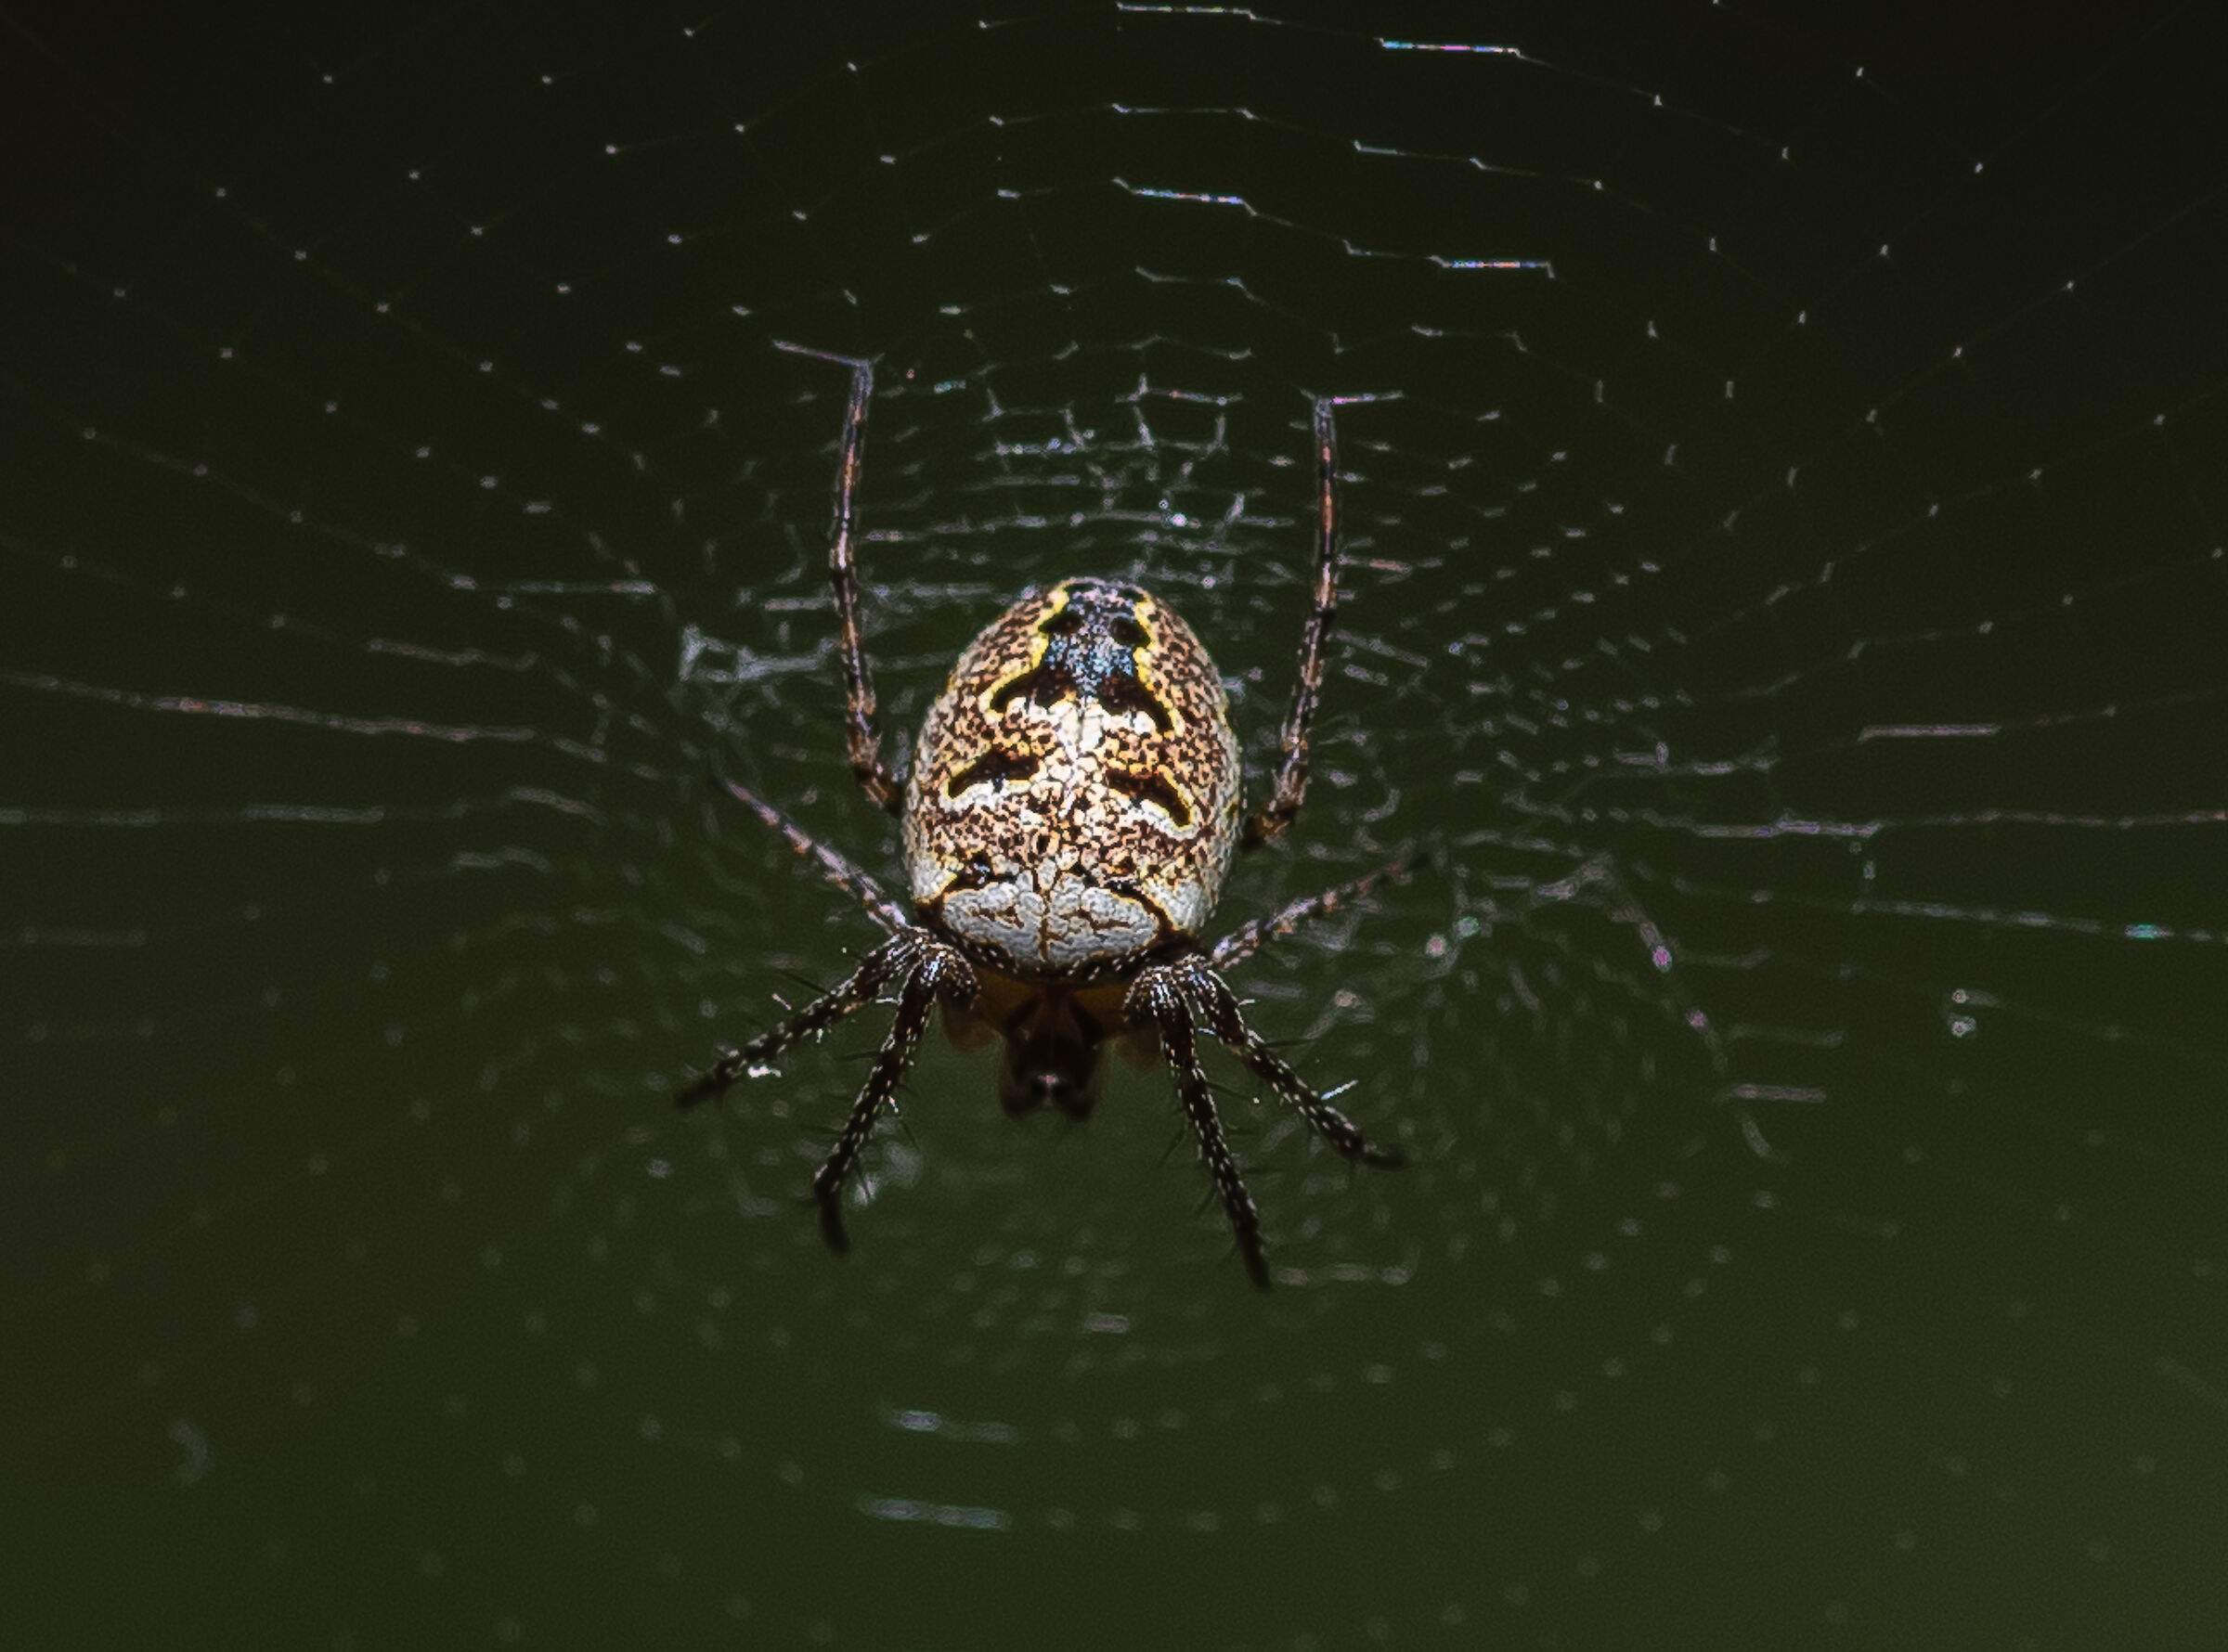 Spider in the garden...